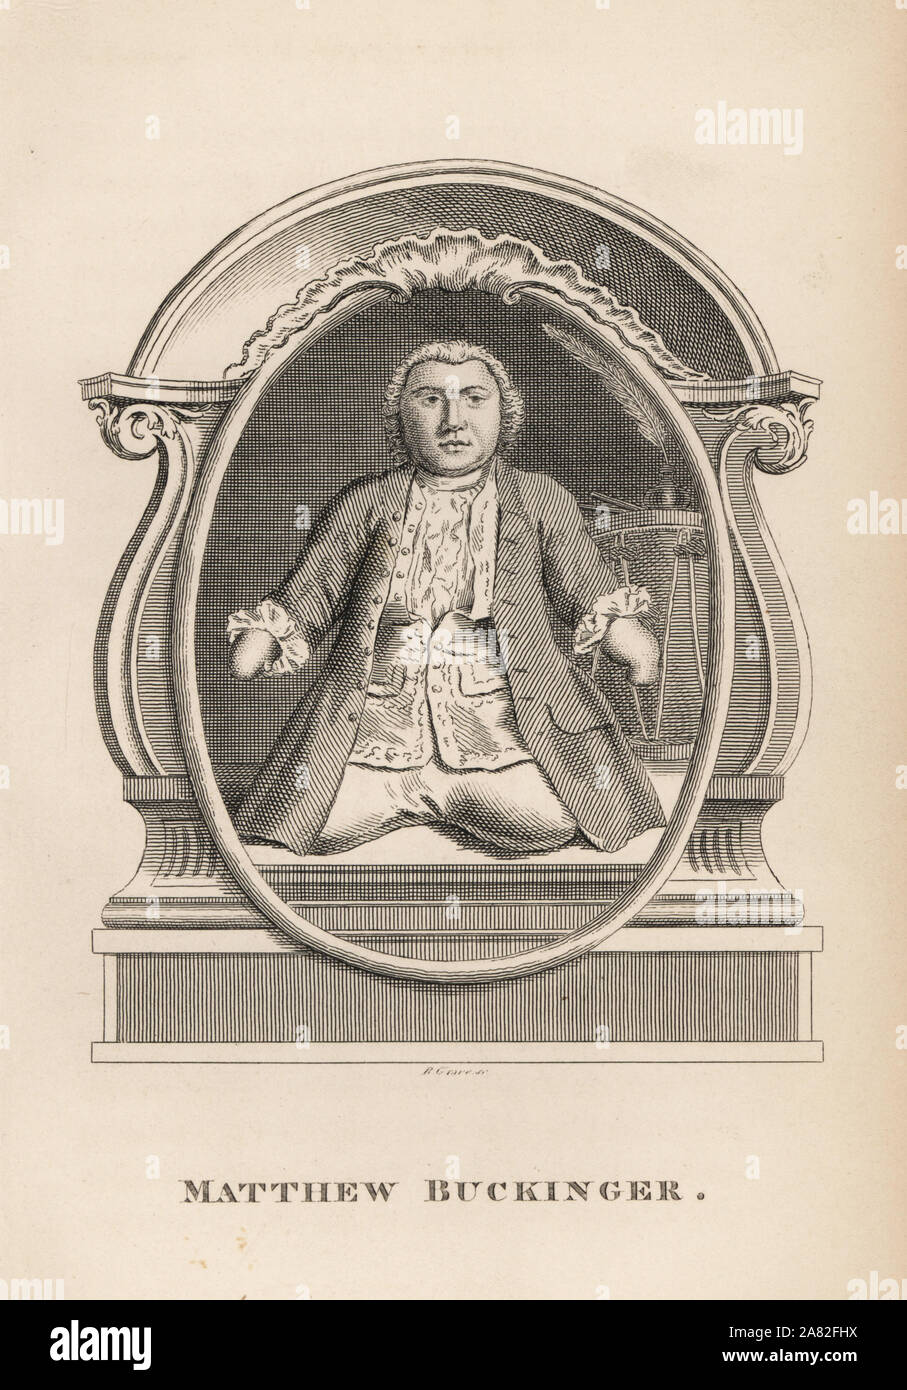 Matthäus Buckinger, deutscher Schauspieler, vier Mal verheiratet und hatte 11 Kinder, starben 1722. Gravur von R. Grab von James Caulfields Porträts, Memoiren und Zeichen von bemerkenswerter Personen, London, 1819. Stockfoto